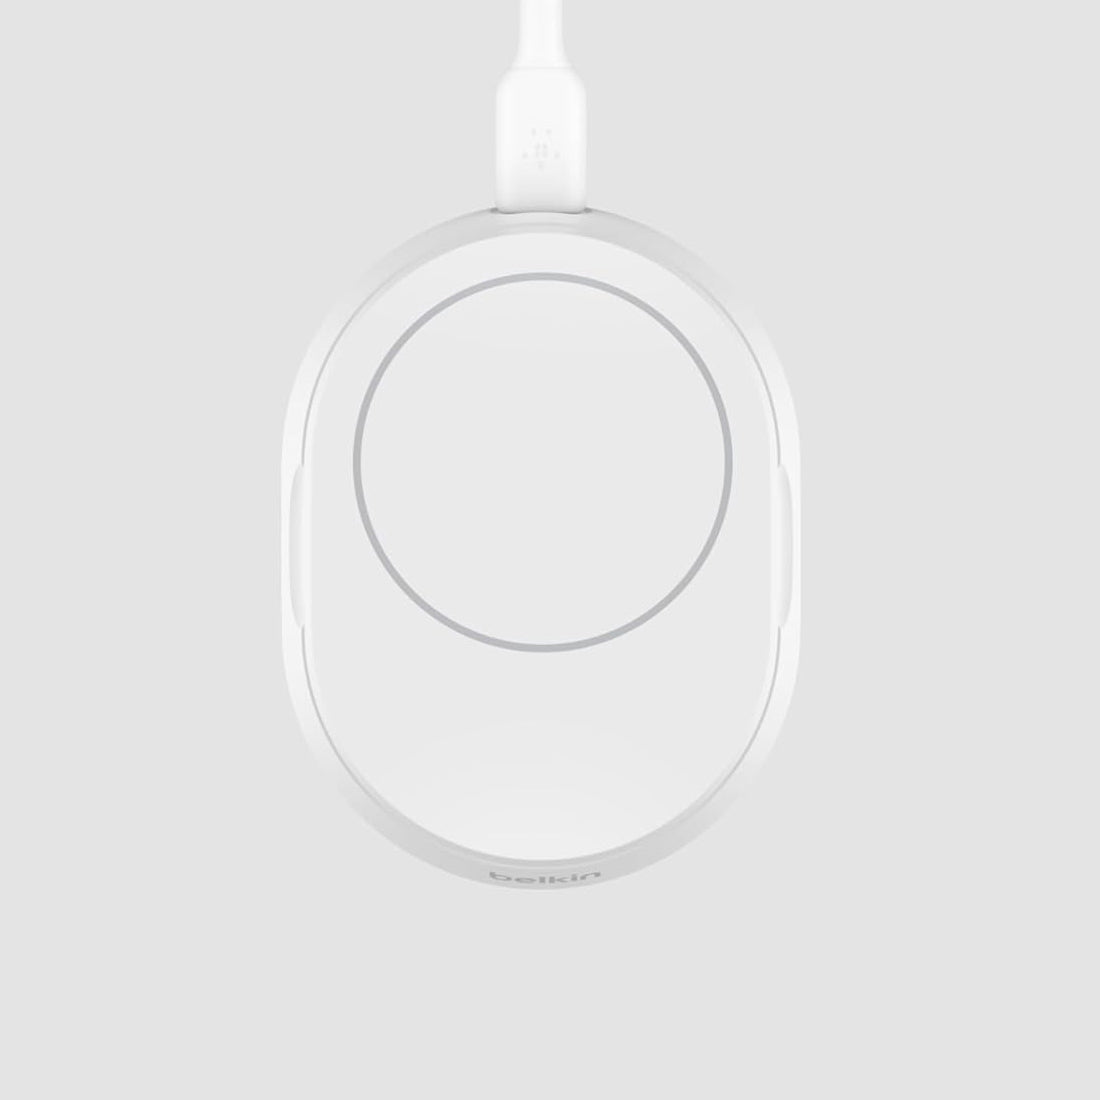 Drahtloses Ladegerät Belkin Boost Pro Convertible Qi2 15W WIA008 für iPhone mit MagSafe (noPSU), Weiß